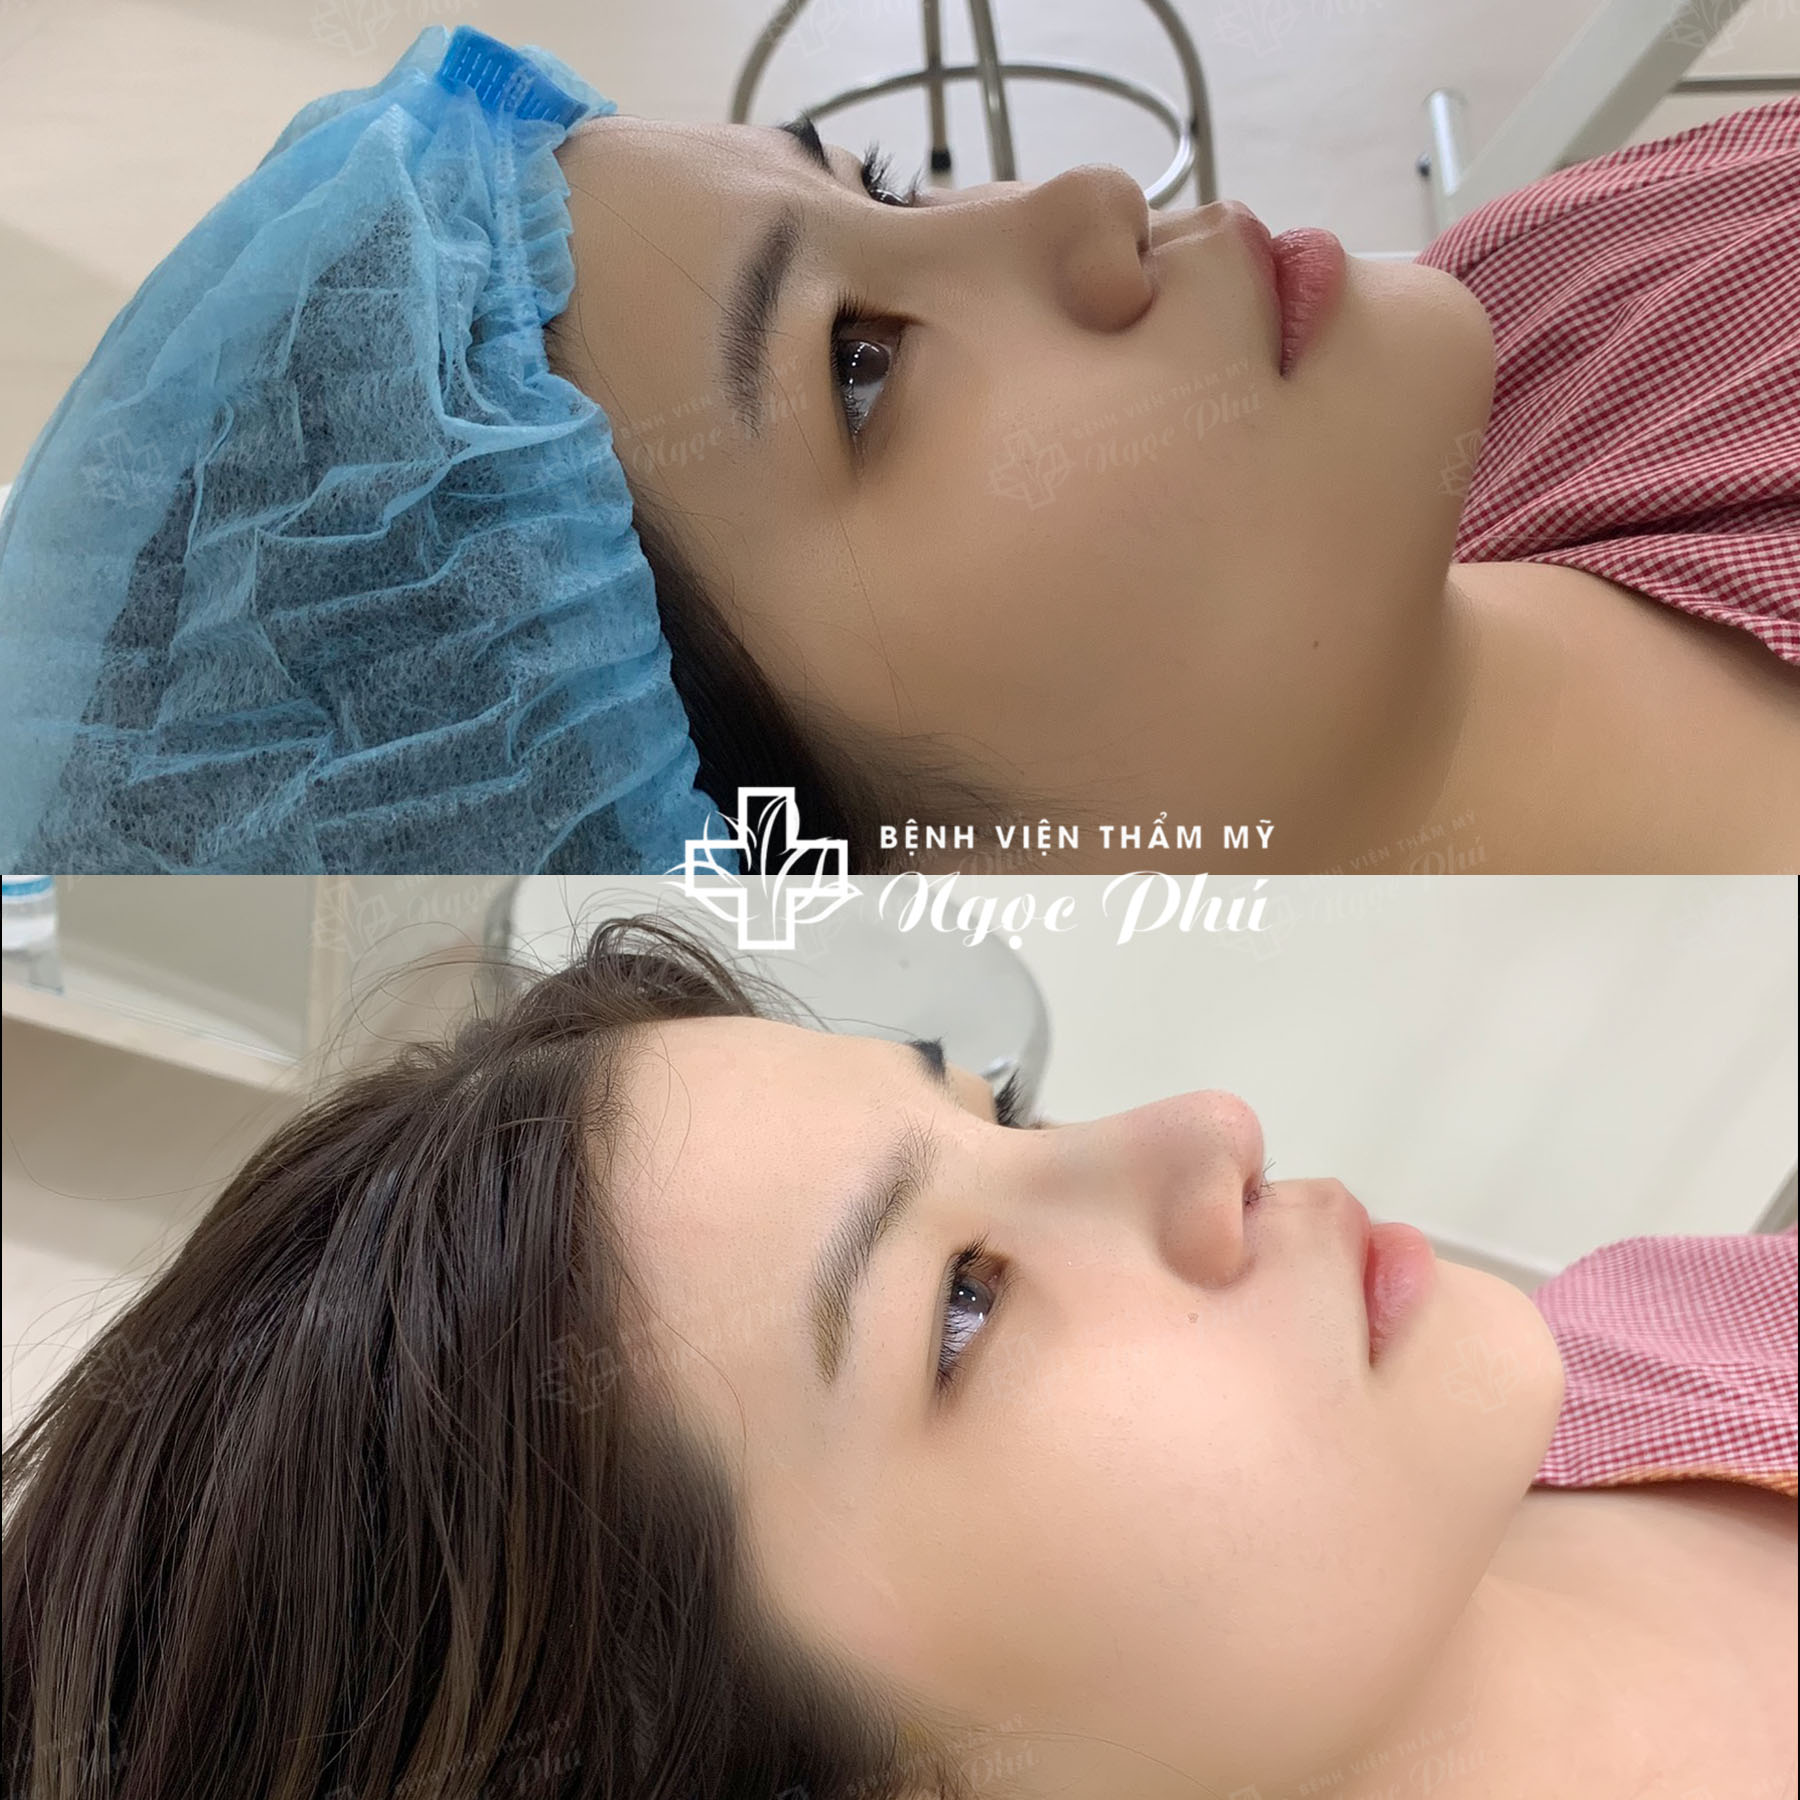 Phương pháp nâng mũi Hàn Quốc được thực hiện bằng cách sử dụng sụn nhân tạo cao cấp để nâng cao sống mũi, tạo hình đầu mũi, cánh mũi theo tỷ lệ vàng của khuôn mặt.